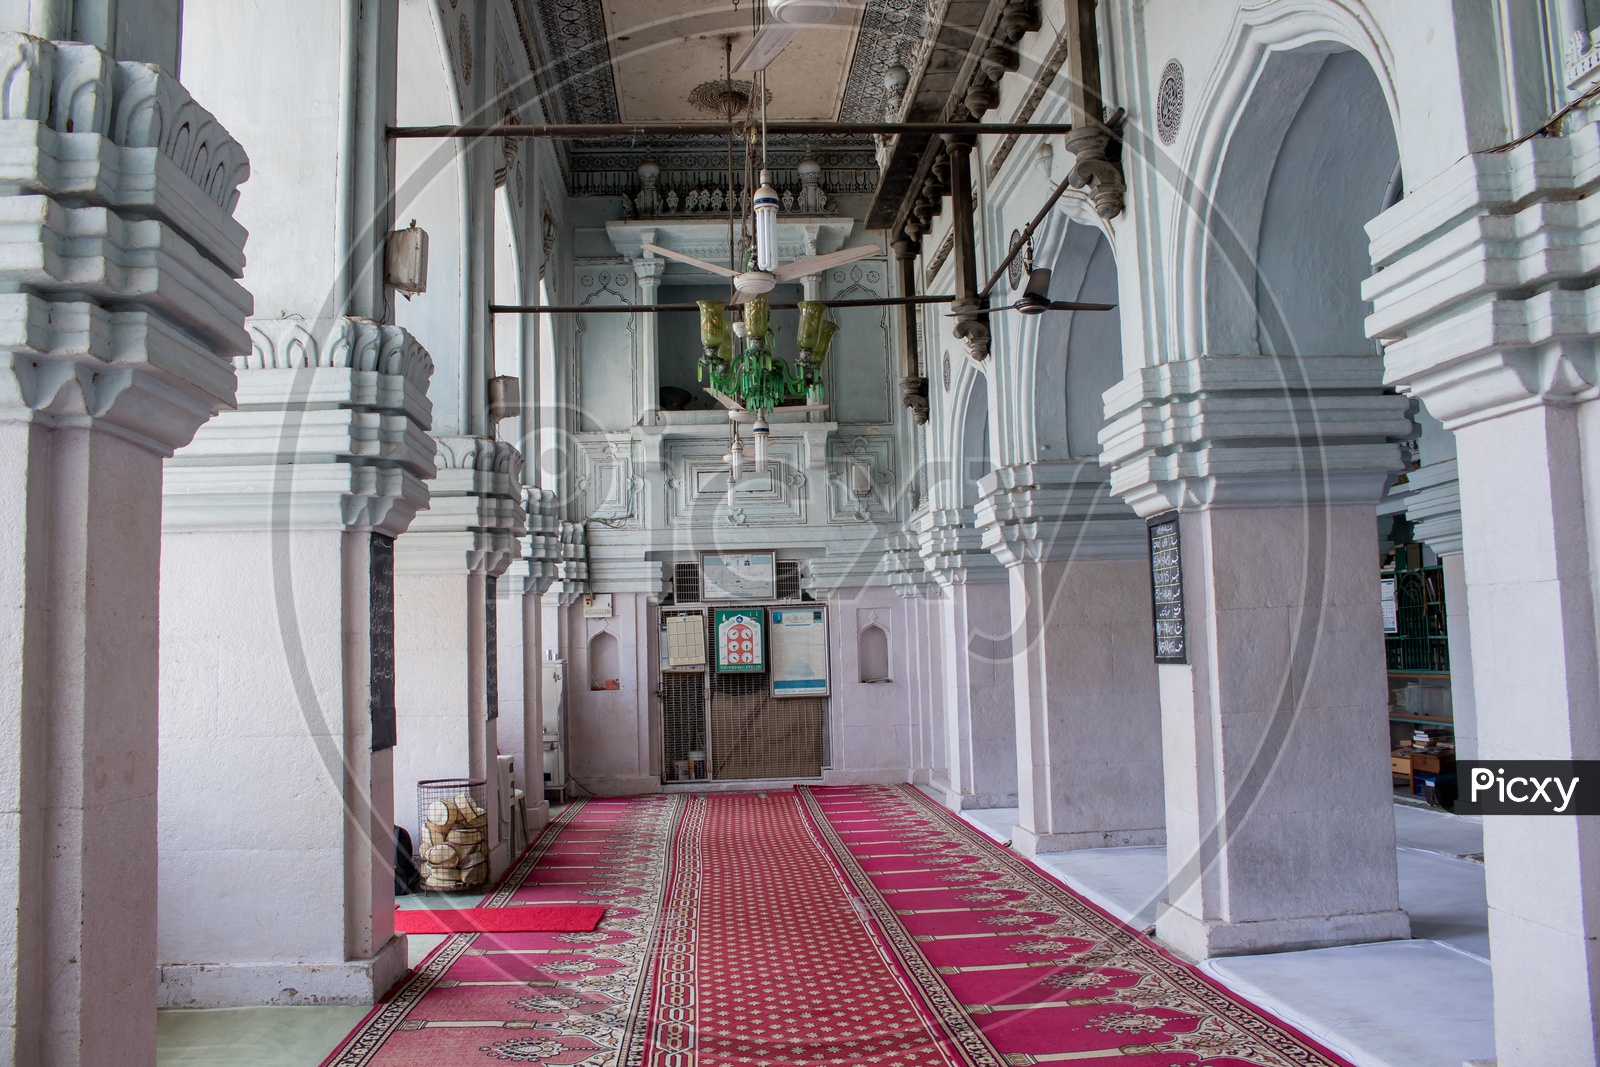 masjid in hyderabad